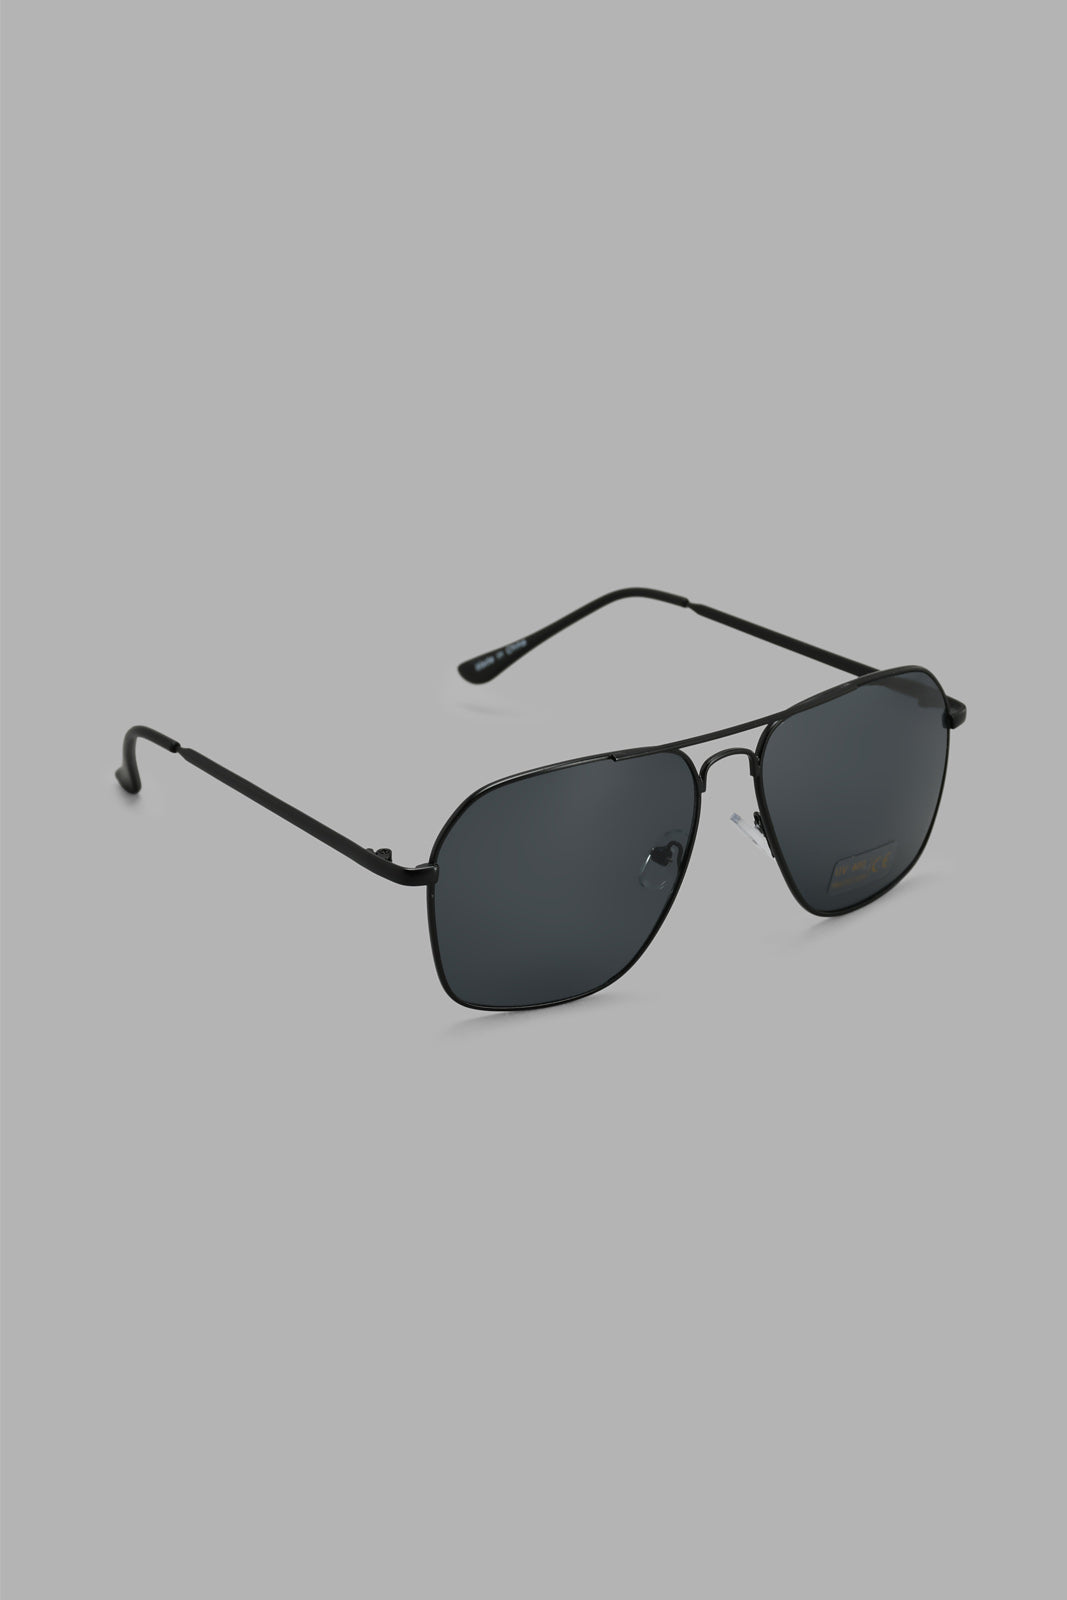 

Black Aviator Sunglasses